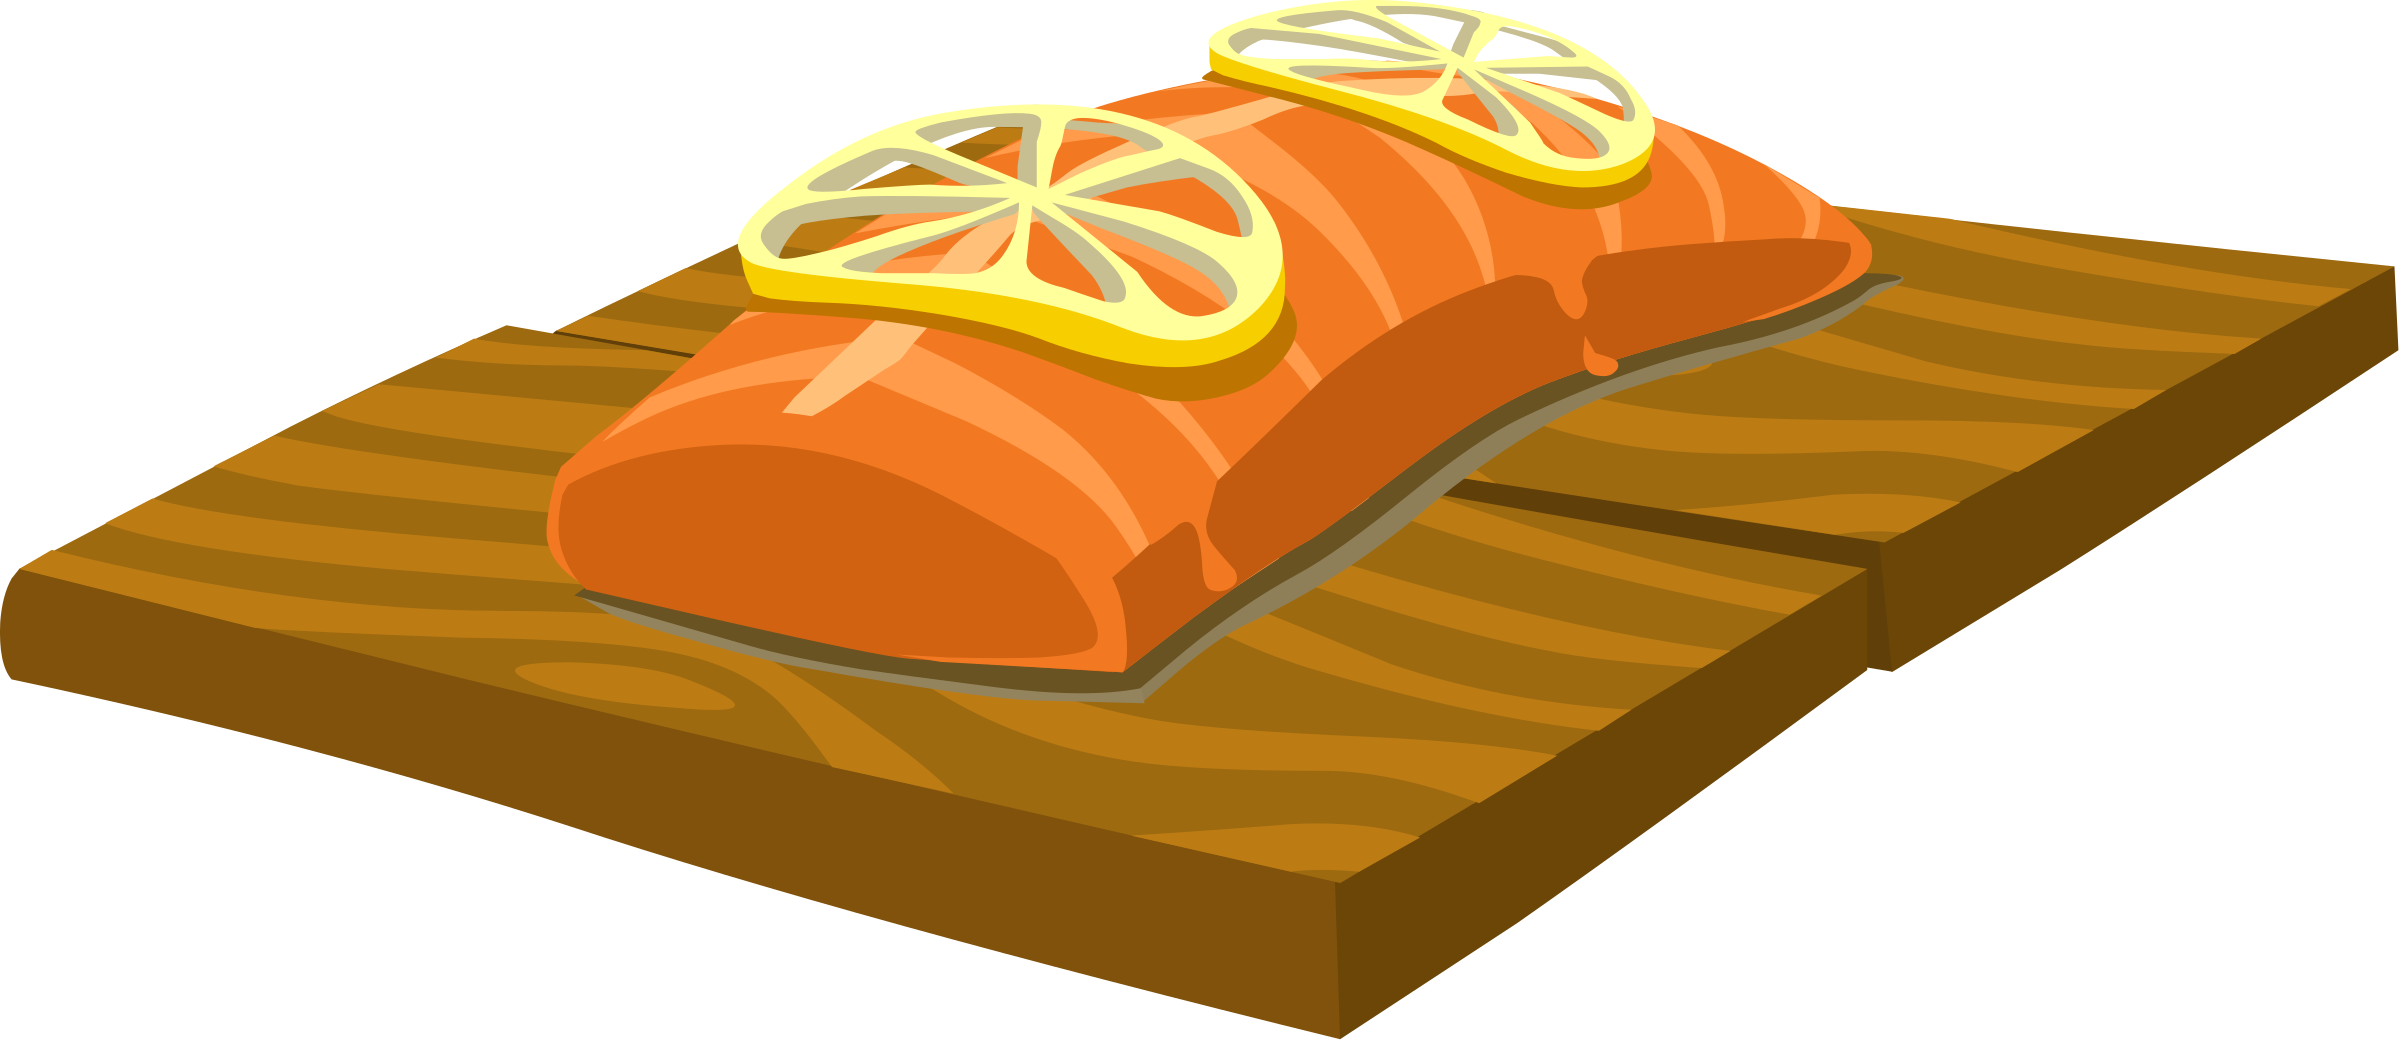 Clipart food cedar plank salmon